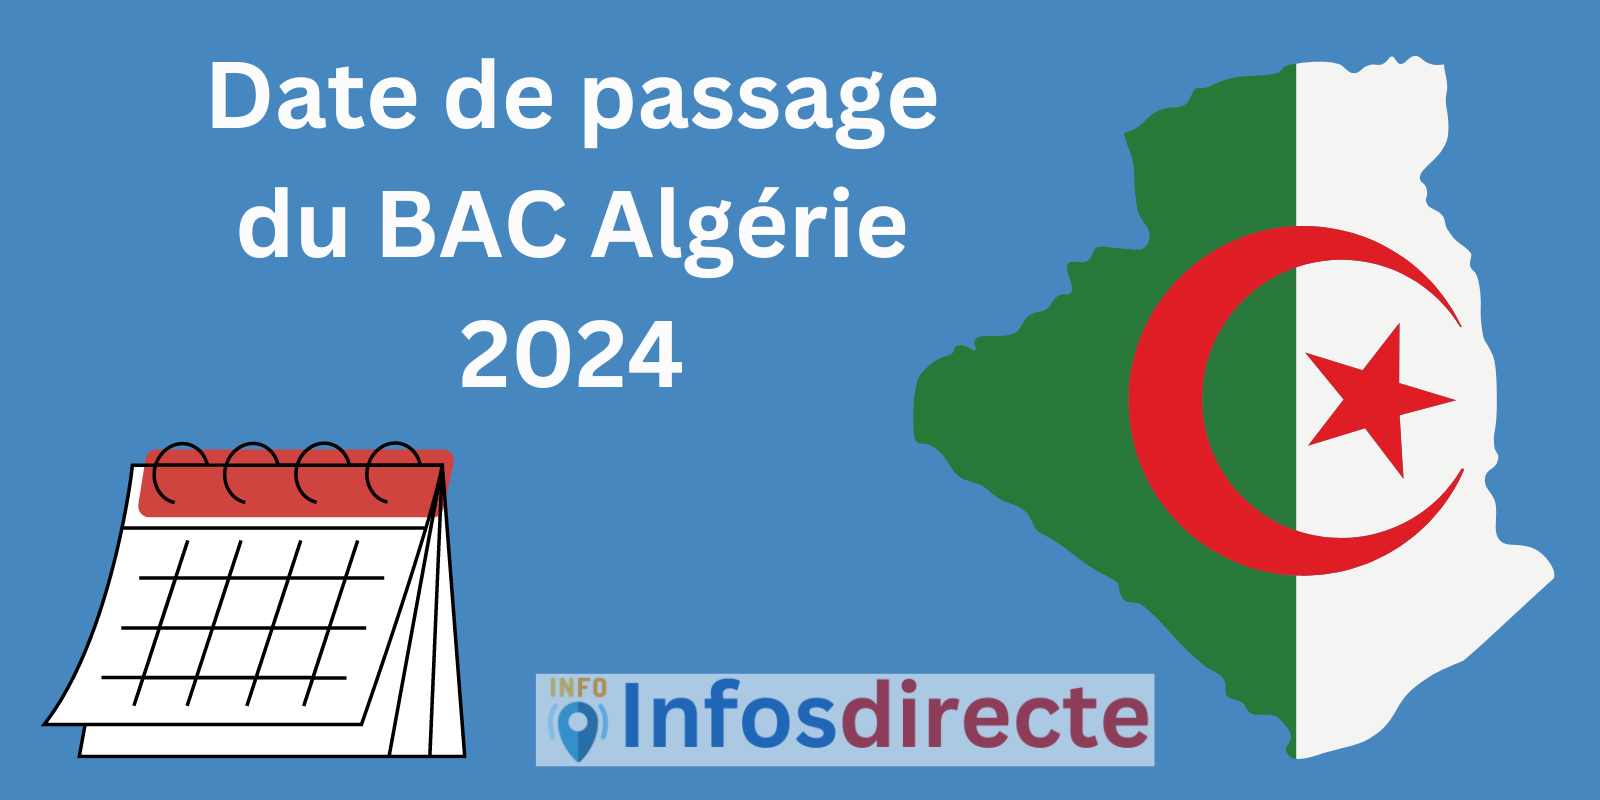 Date de passage du BAC Algérie 2024